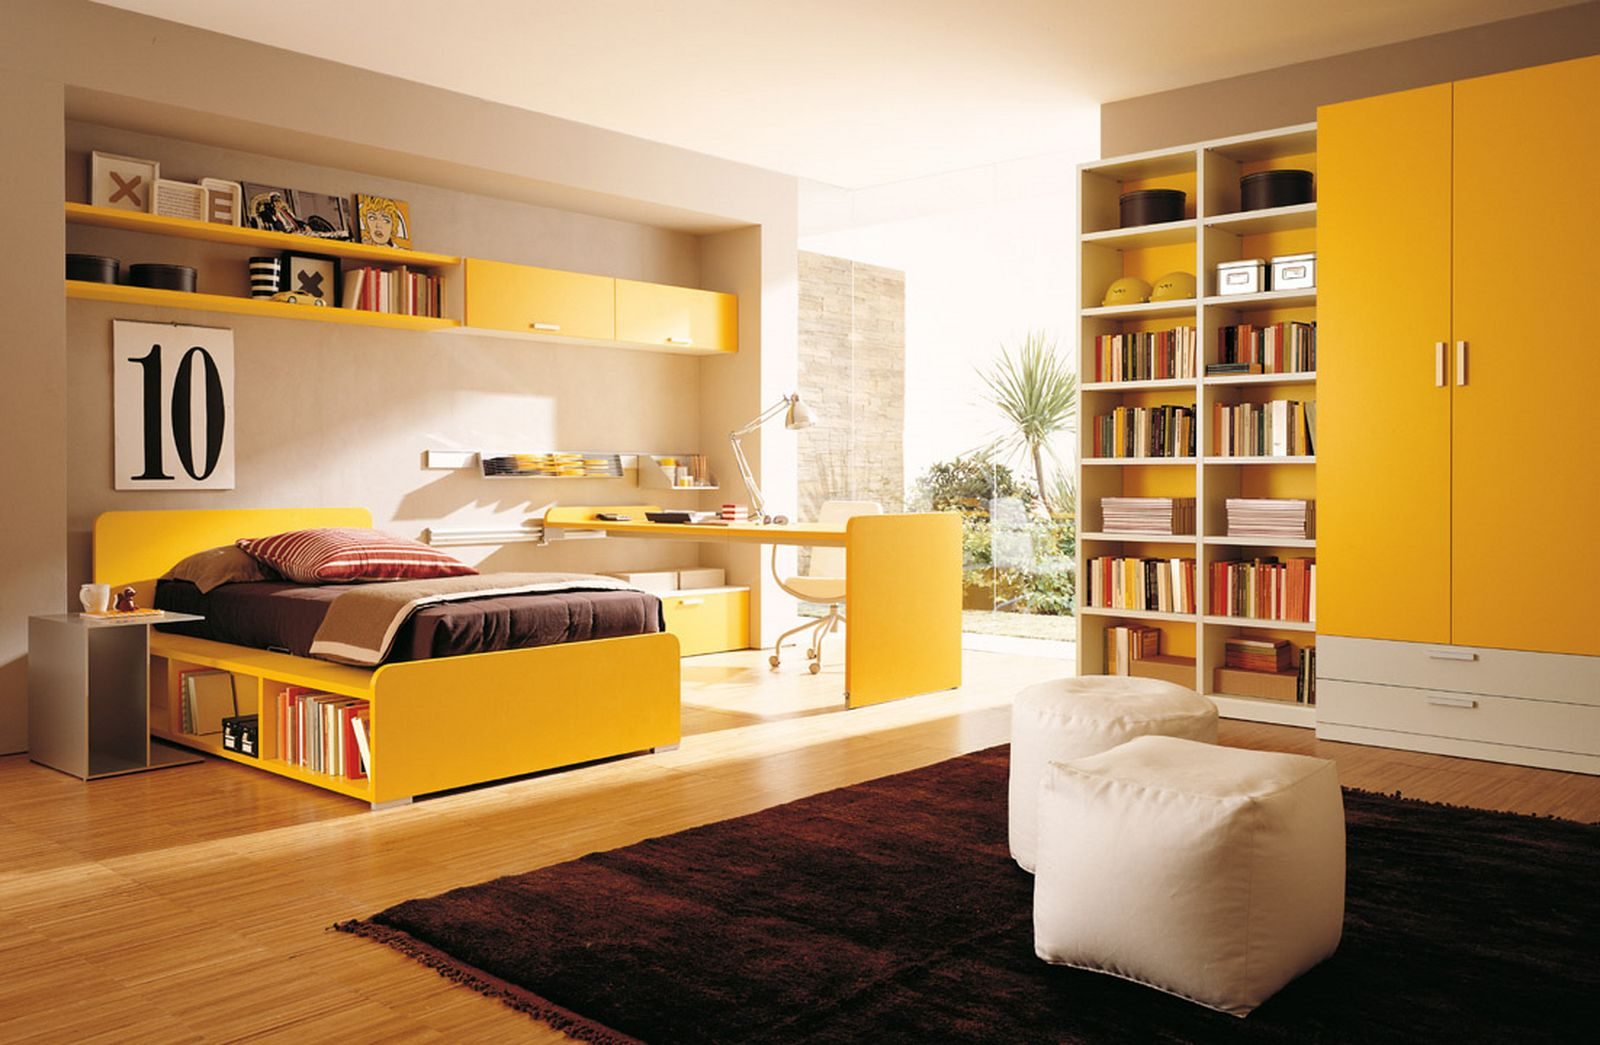 Dormitorio juvenil en tonos amarillos :: Imágenes y fotos